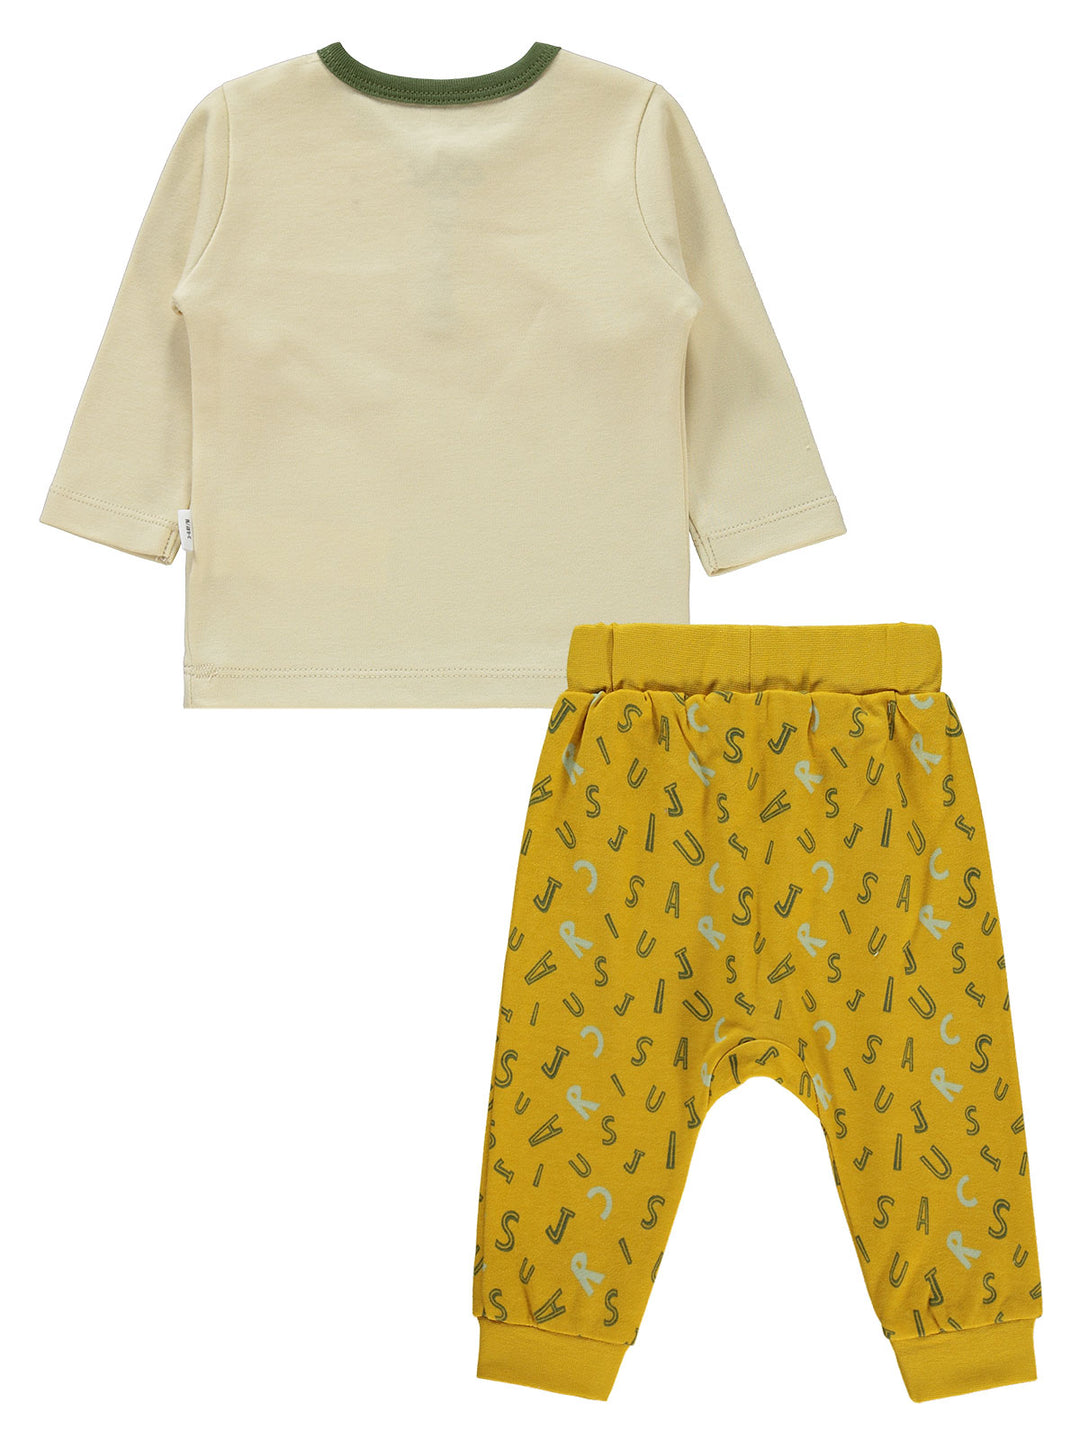 Civil Boys Pajama Suit Cotton L/S 2Pcs #E328 (W-22)